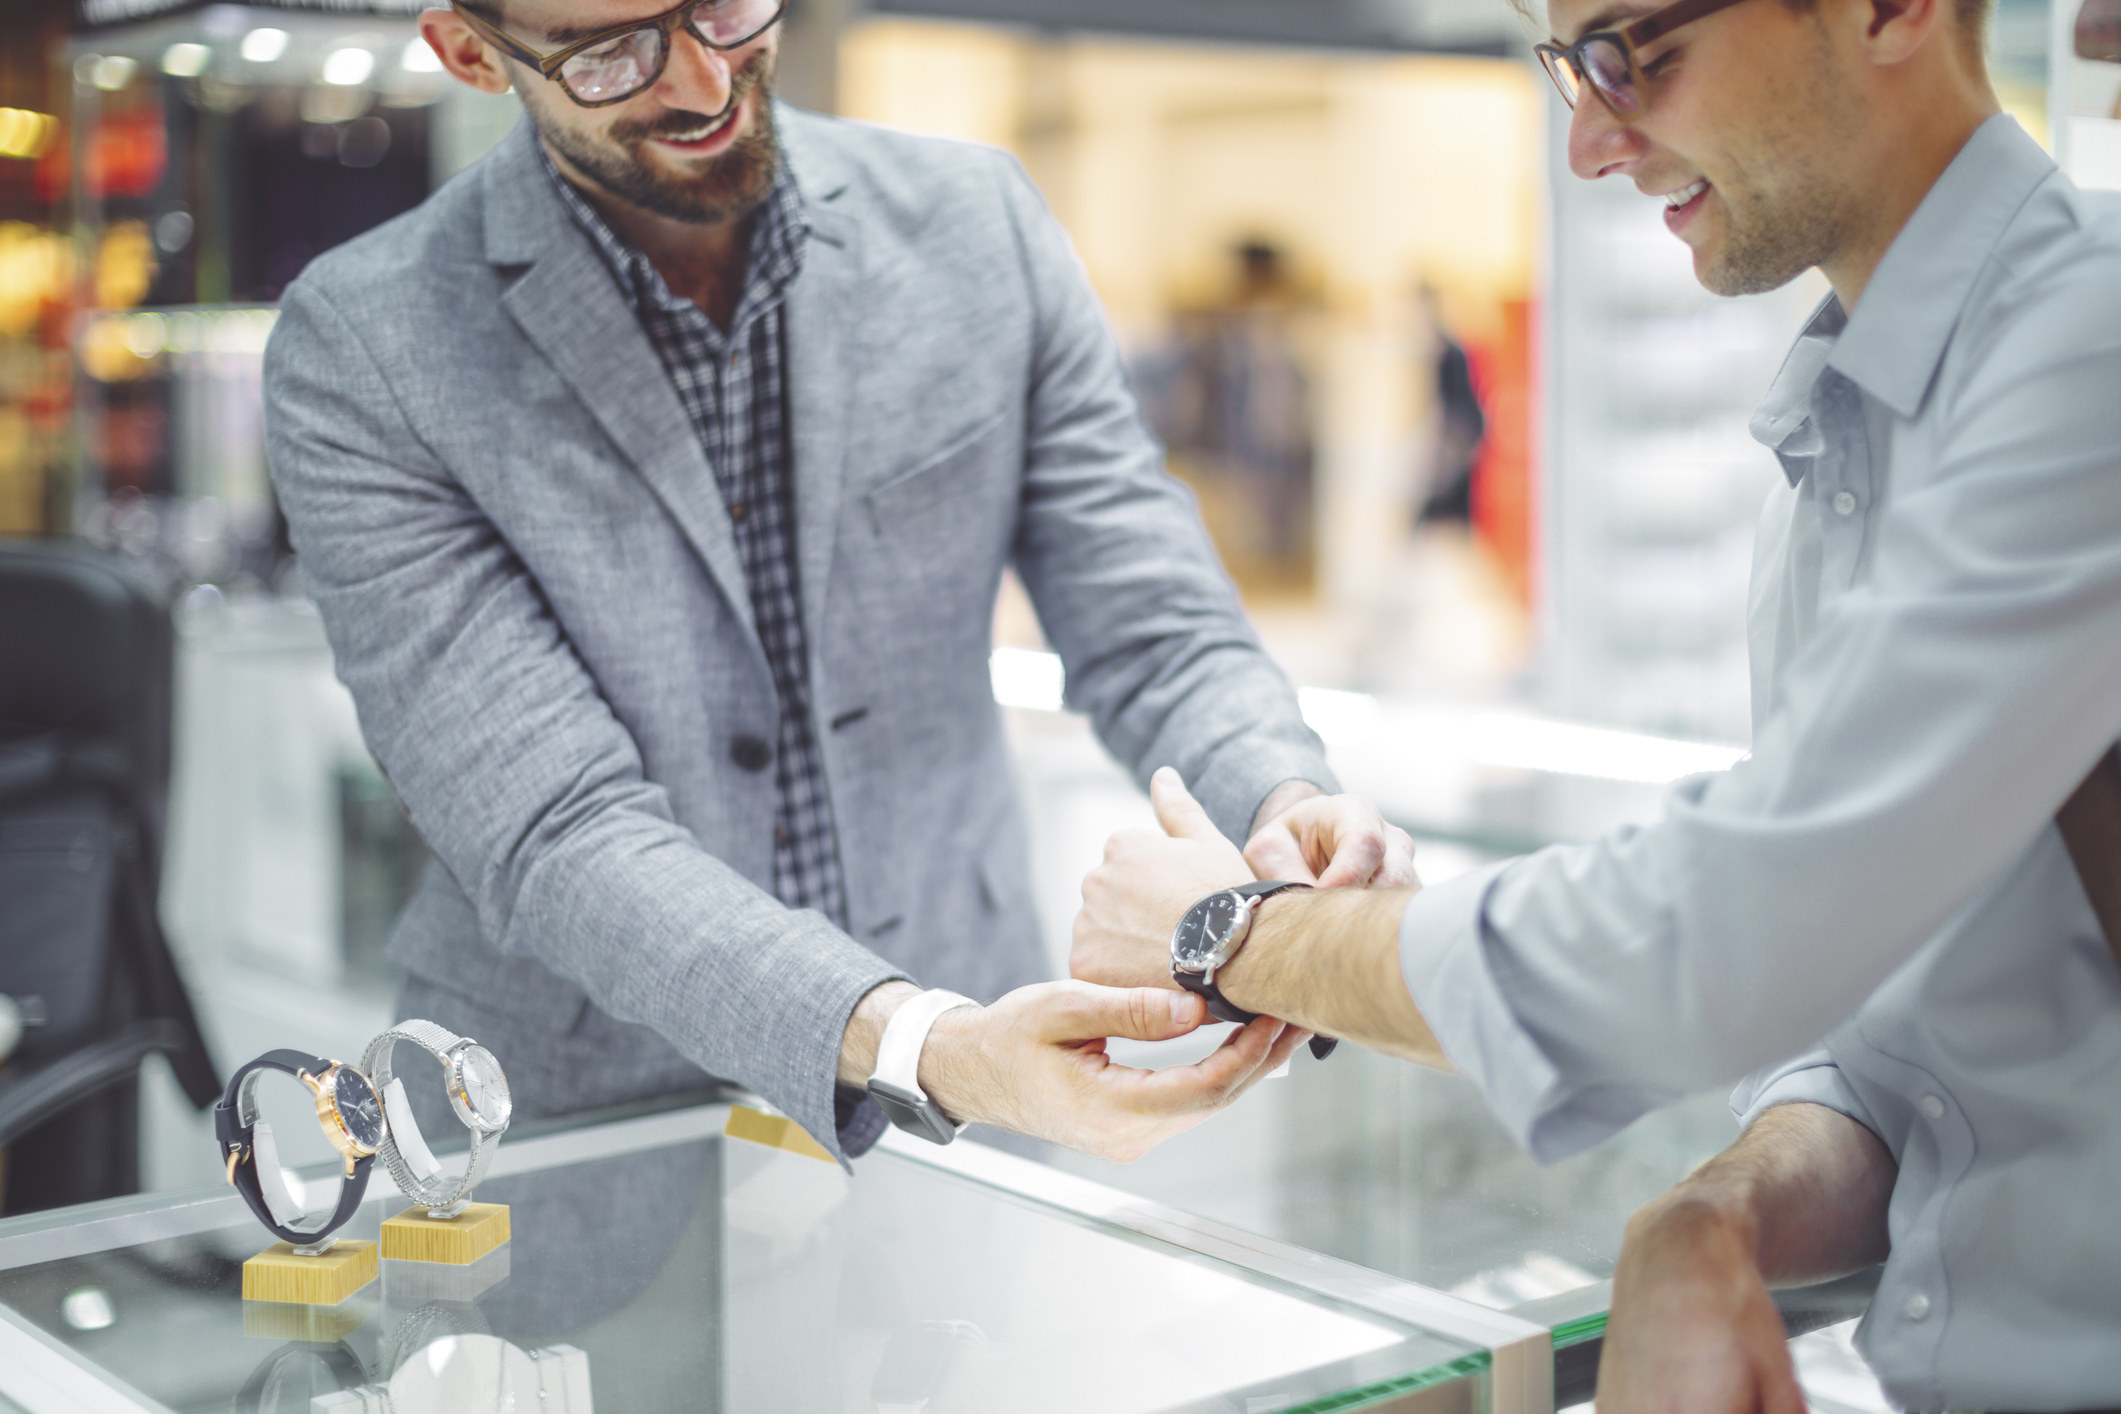 A sales associate putting a watch on a customer